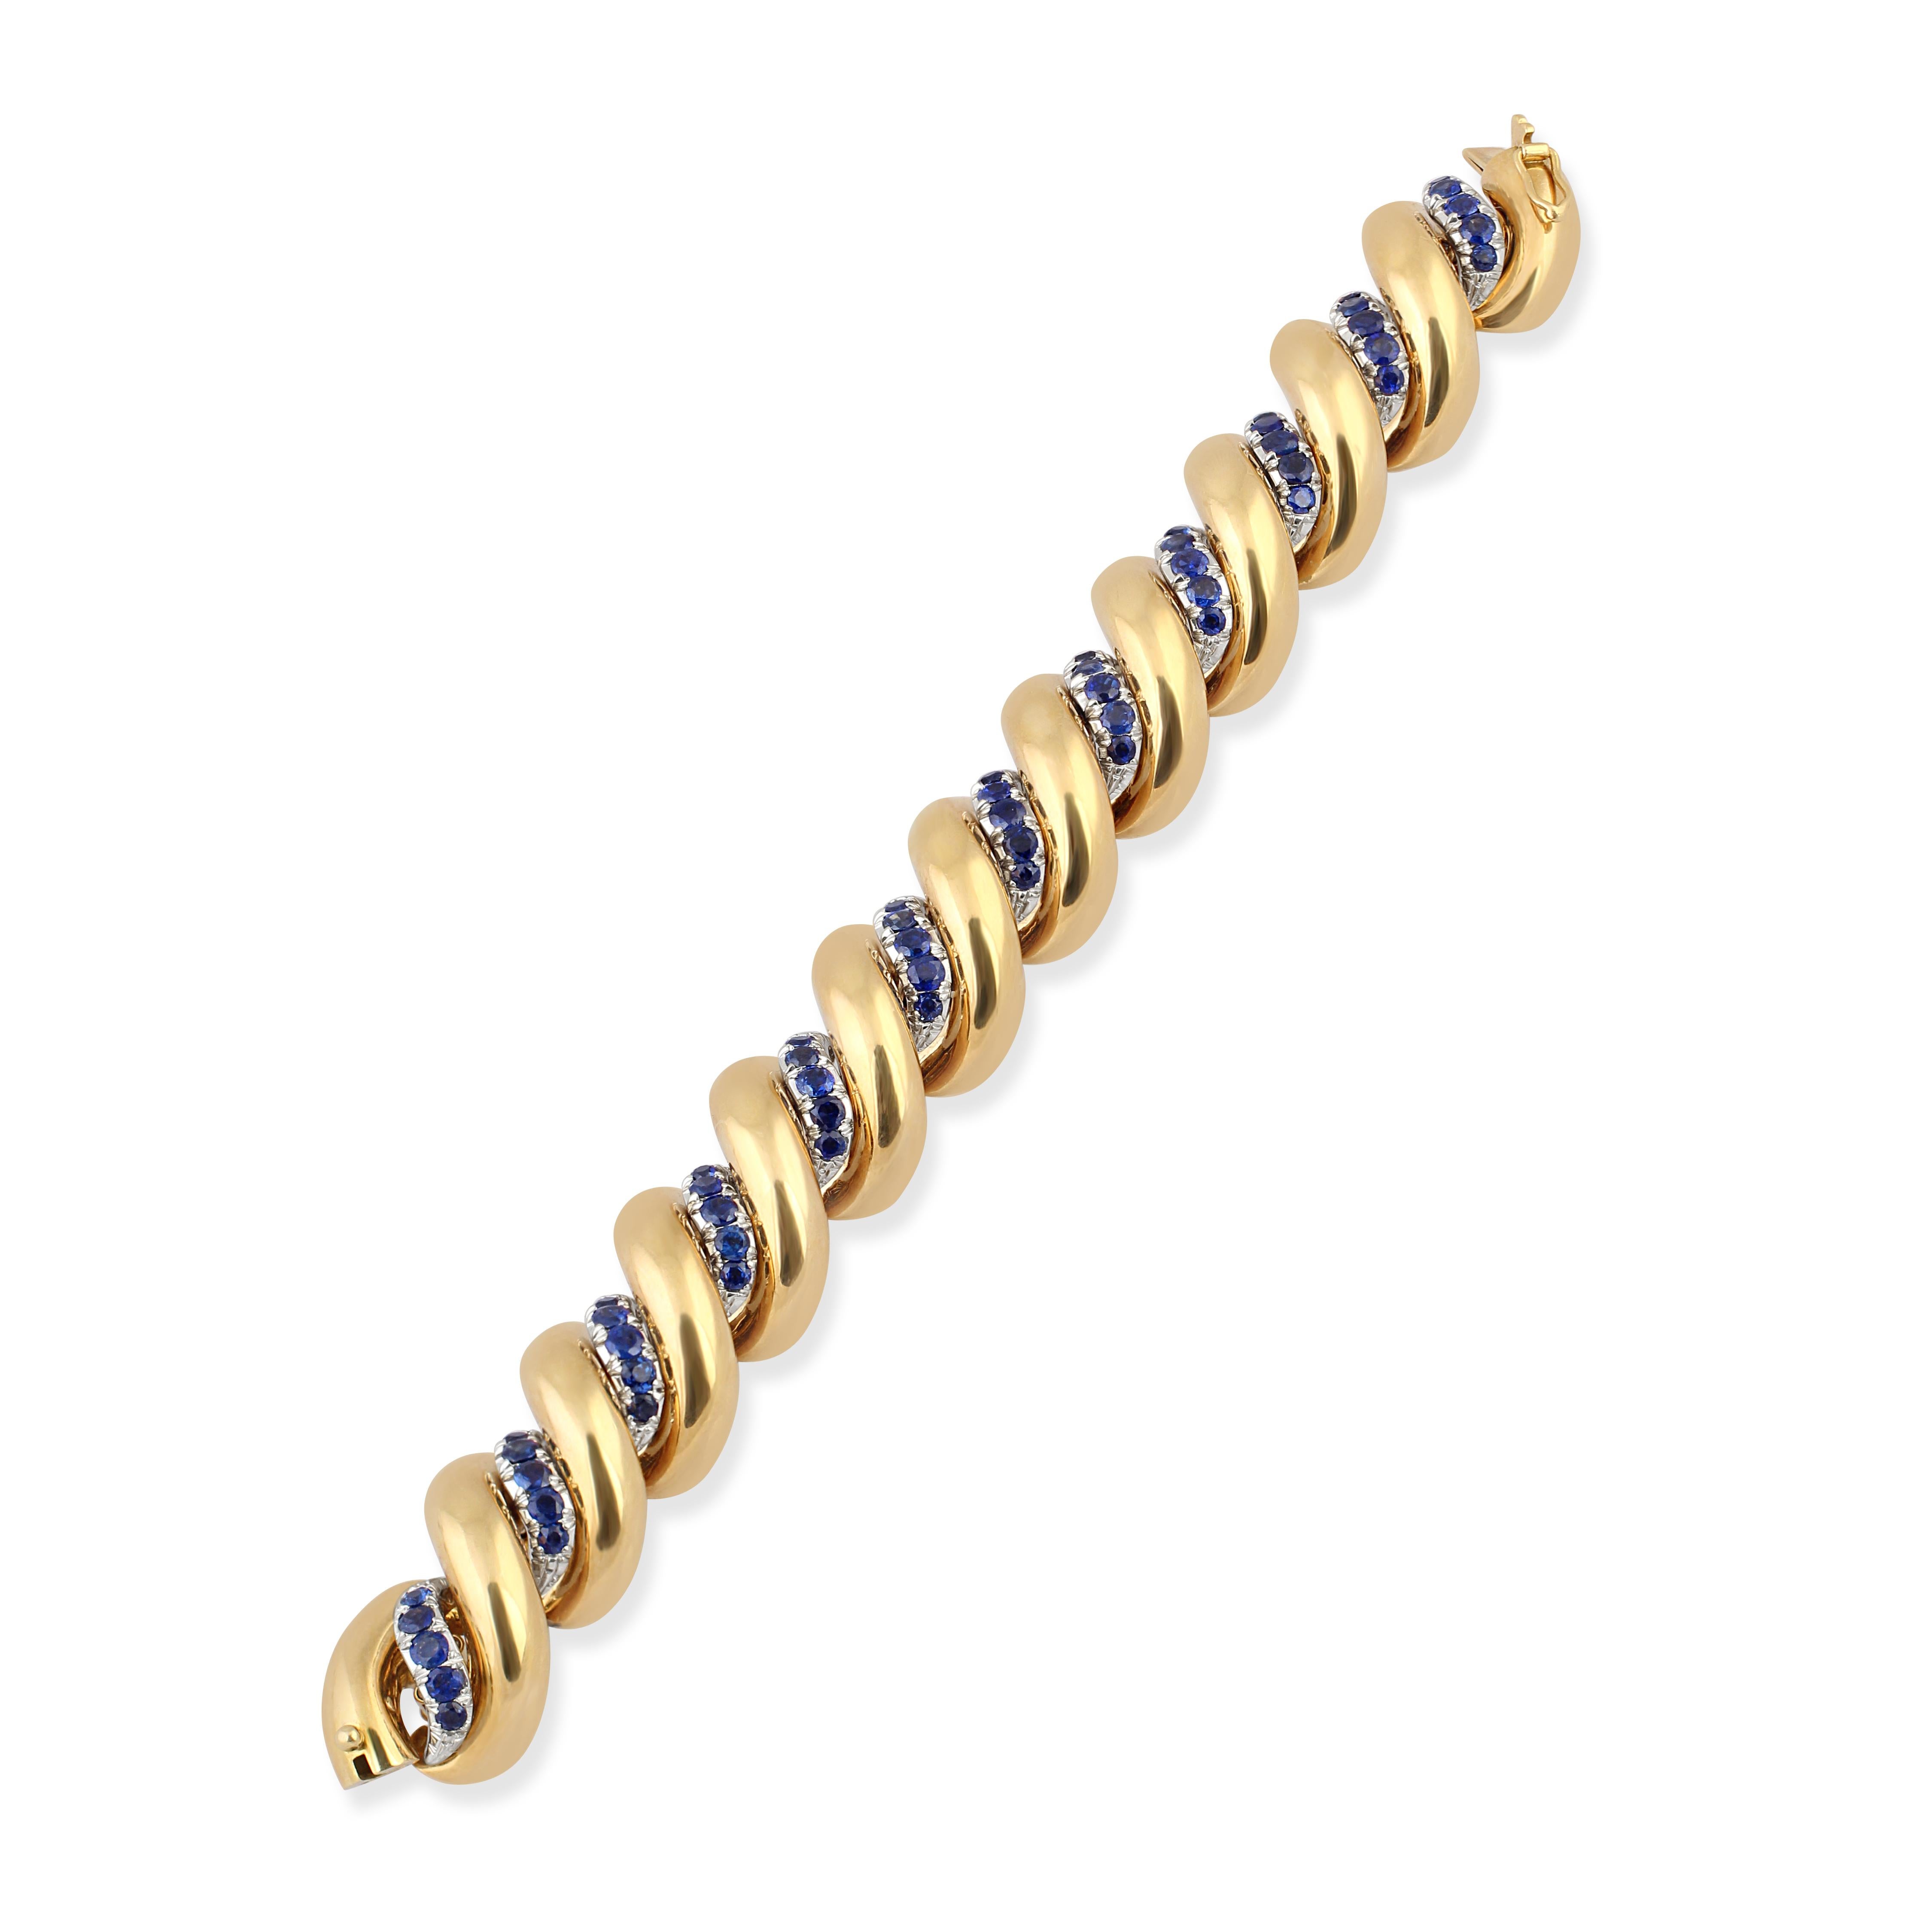 Ein 18-karätiges Goldarmband in einem gedrehten Design mit Saphiren.

Unterzeichnet: E.Nannini
Länge: 19,5 cm
Gewicht: 125gr
Herkunft: Mailand, Italien
